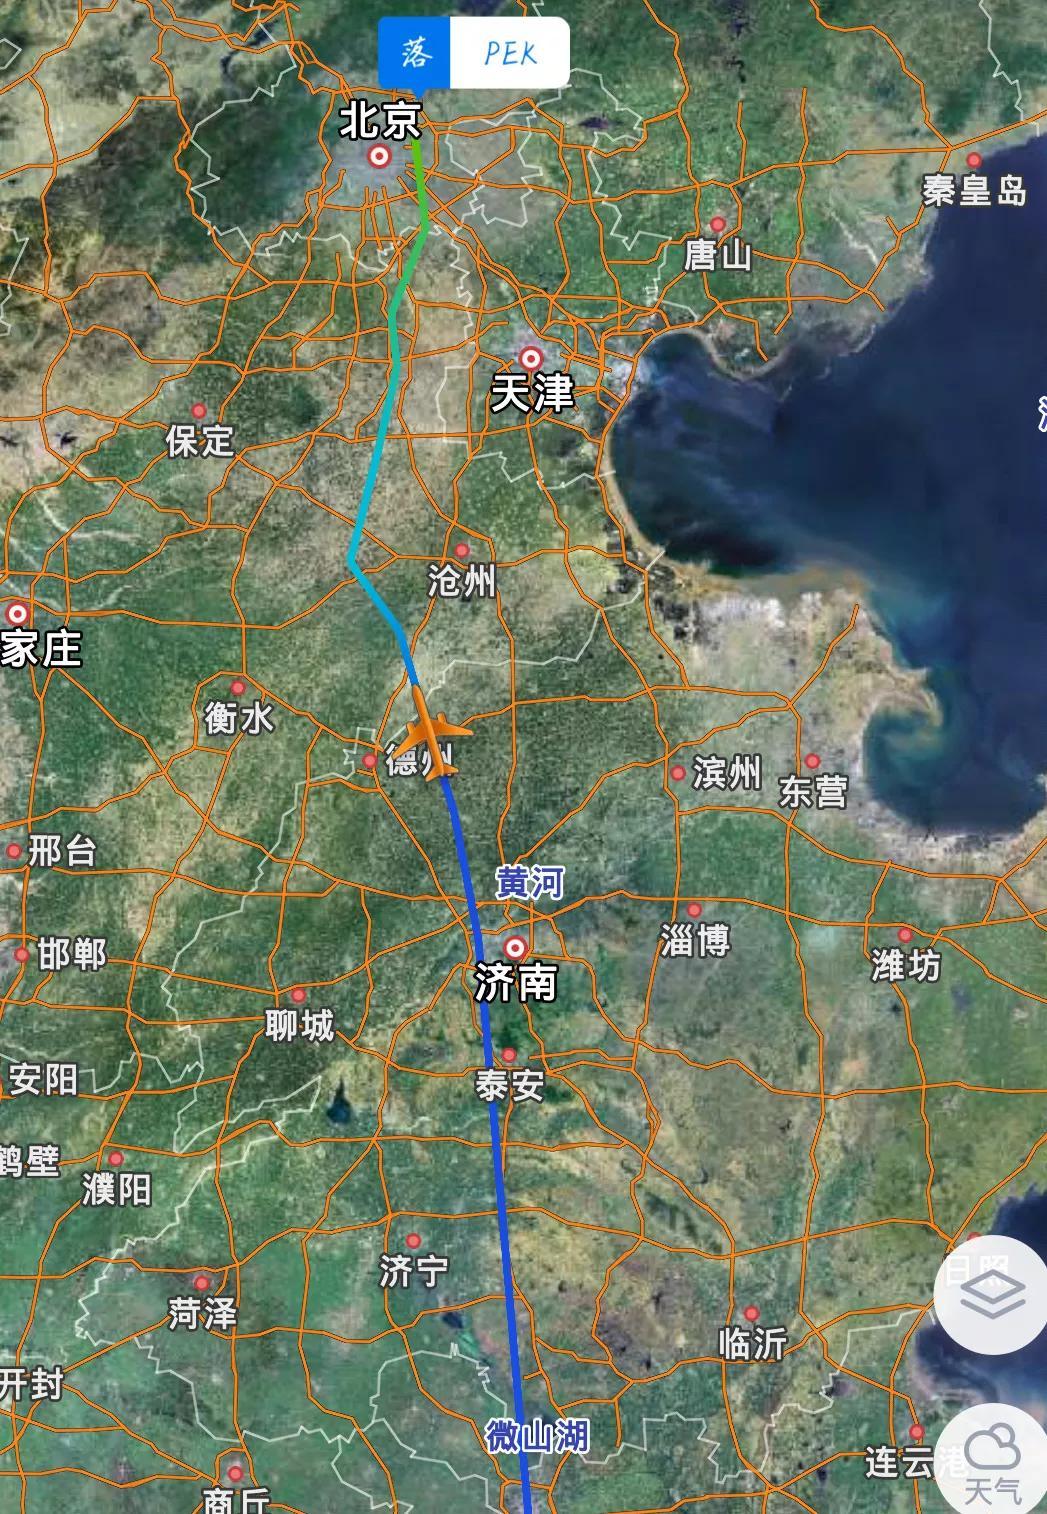 北京离南昌有多少公里路程